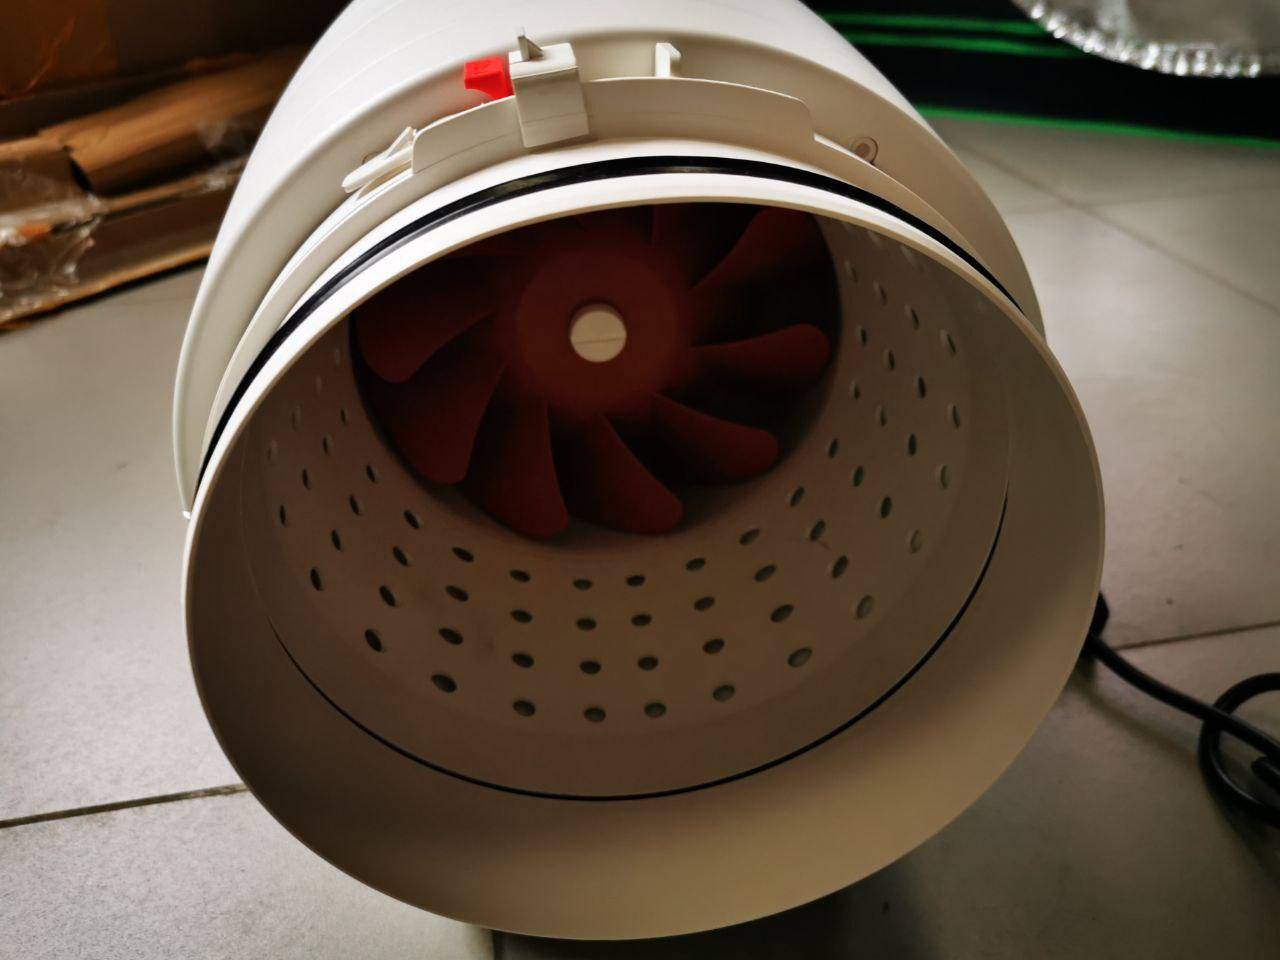 Вентилятор вытяжной канальный: назначение, виды, особенности выбора и установки